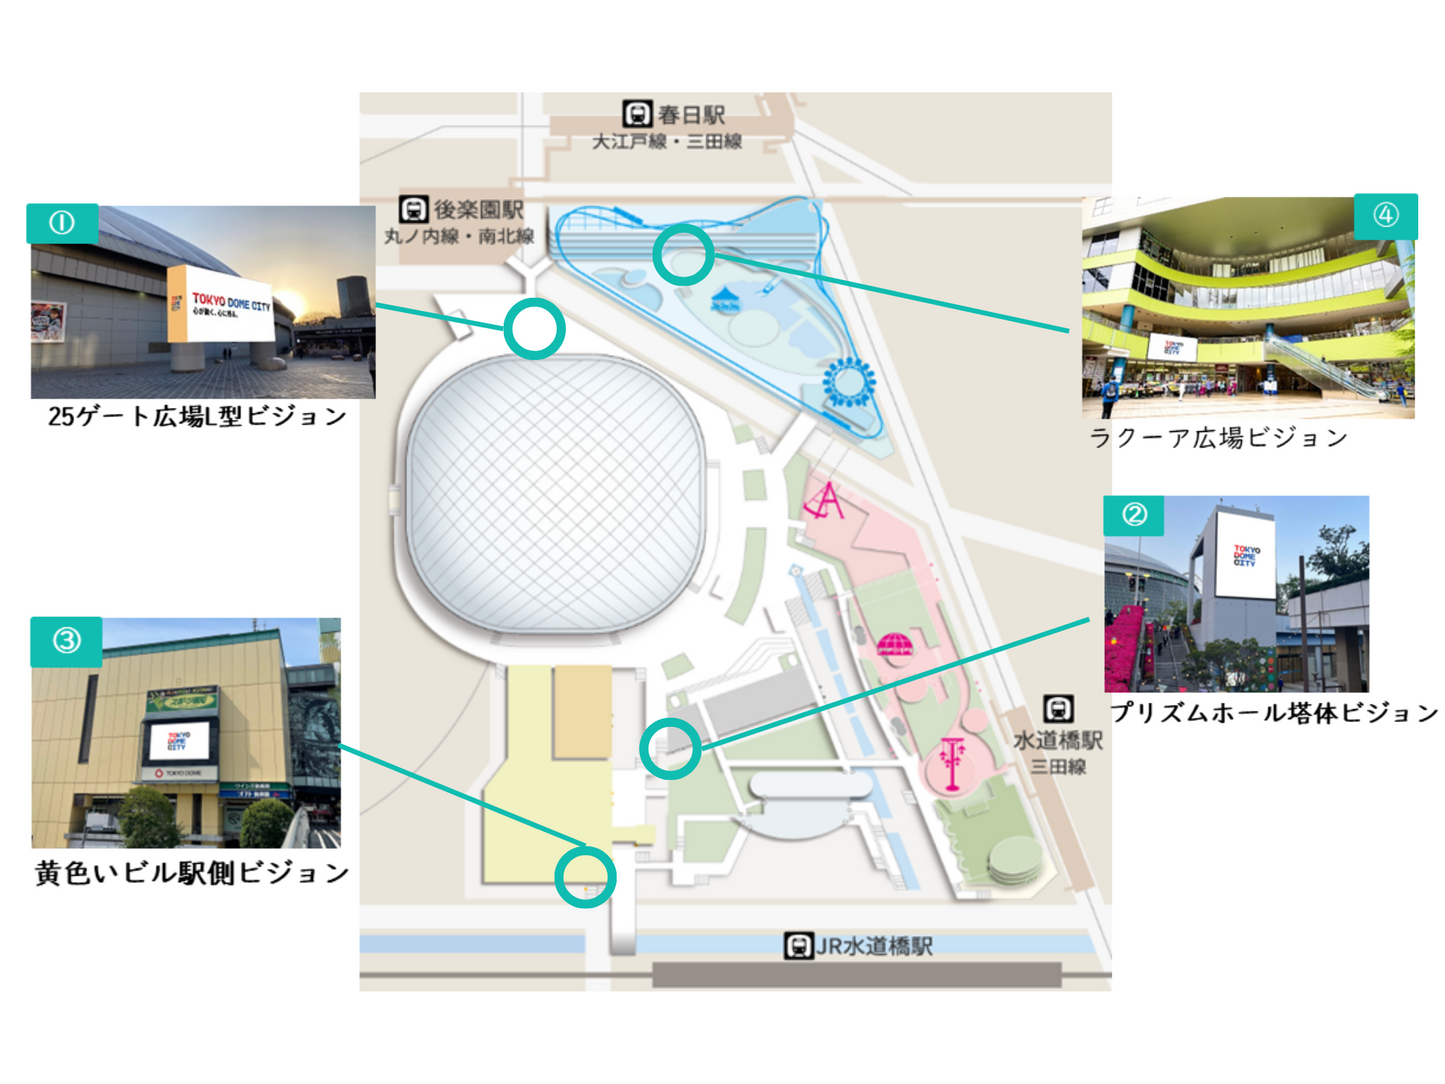 東京ドームシティビジョンズ 基本セット開放  ラクーア広場ビジョン